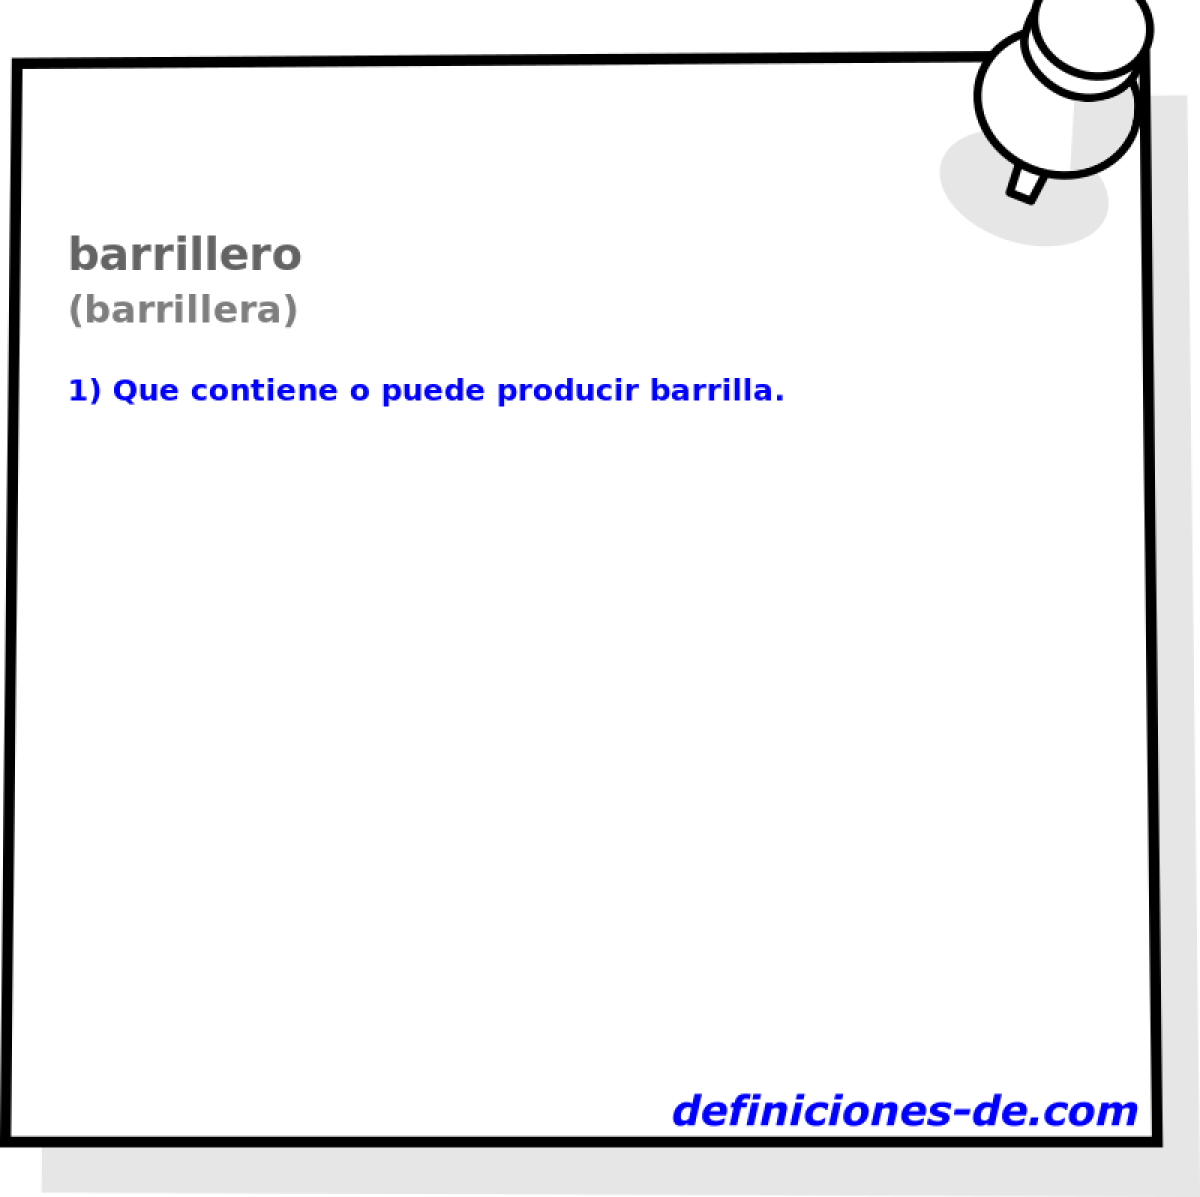 barrillero (barrillera)